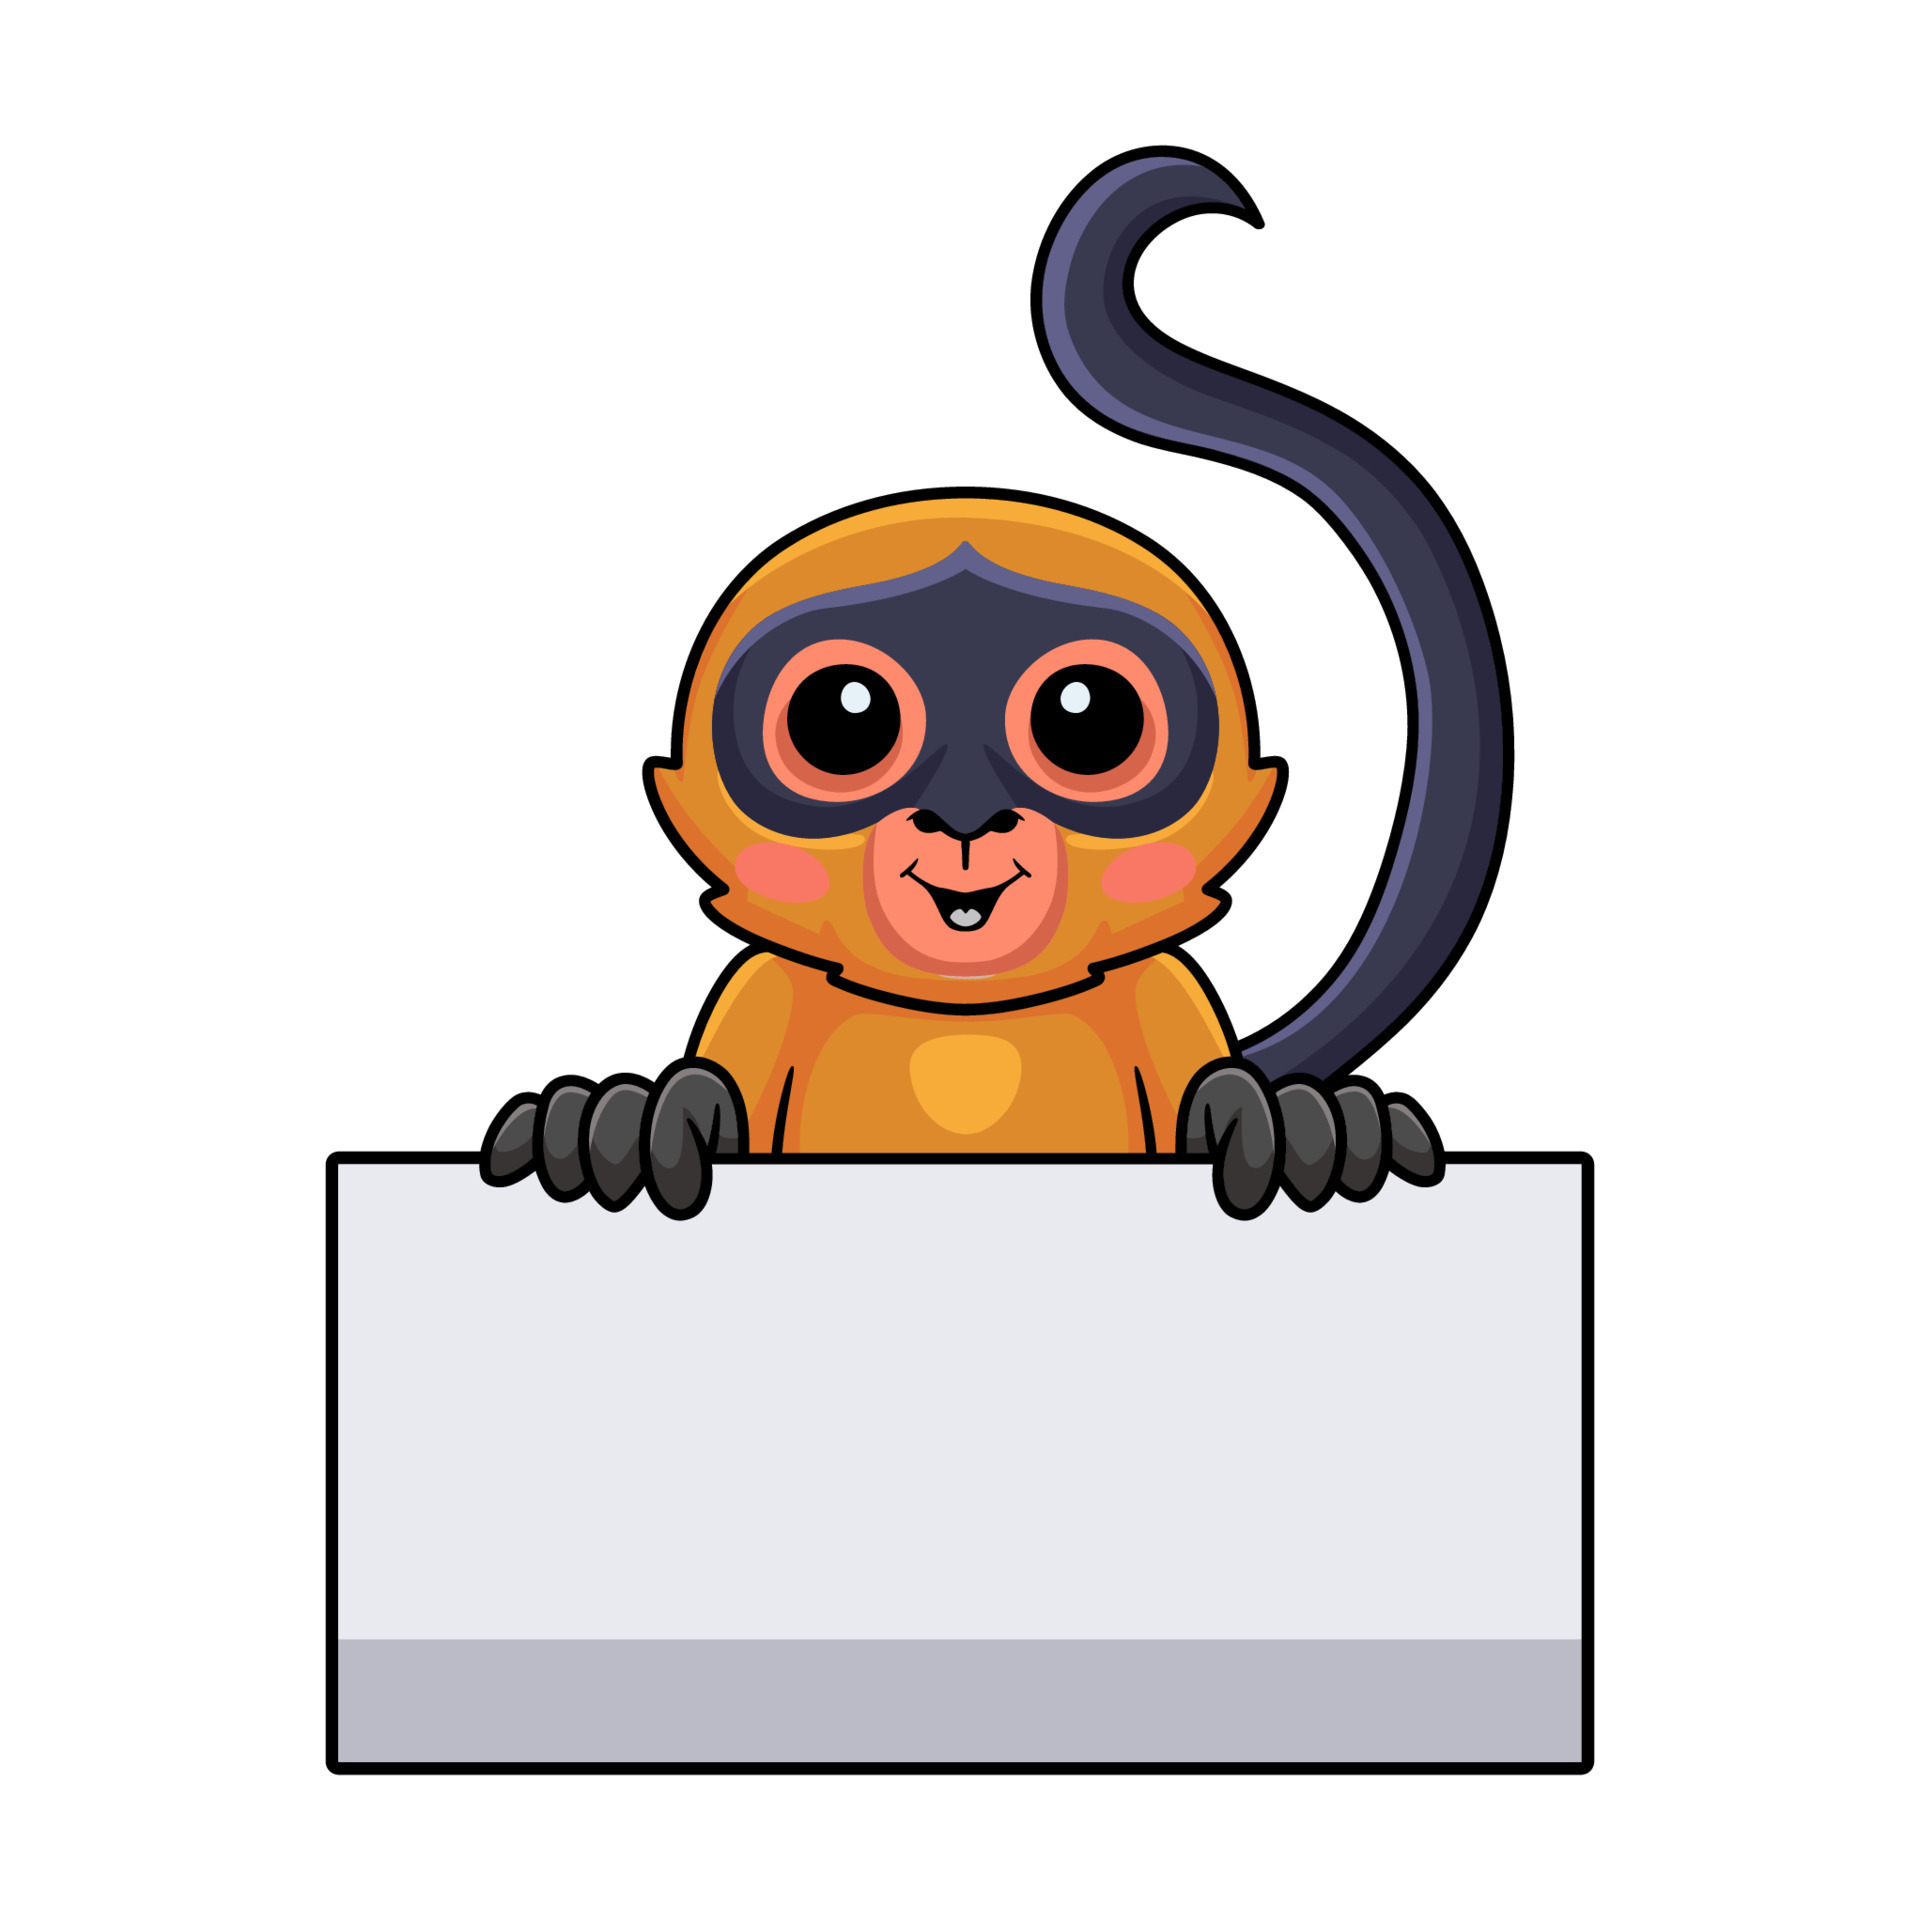 Bonito e adorável bebê fofo de desenho animado macaco-aranha de